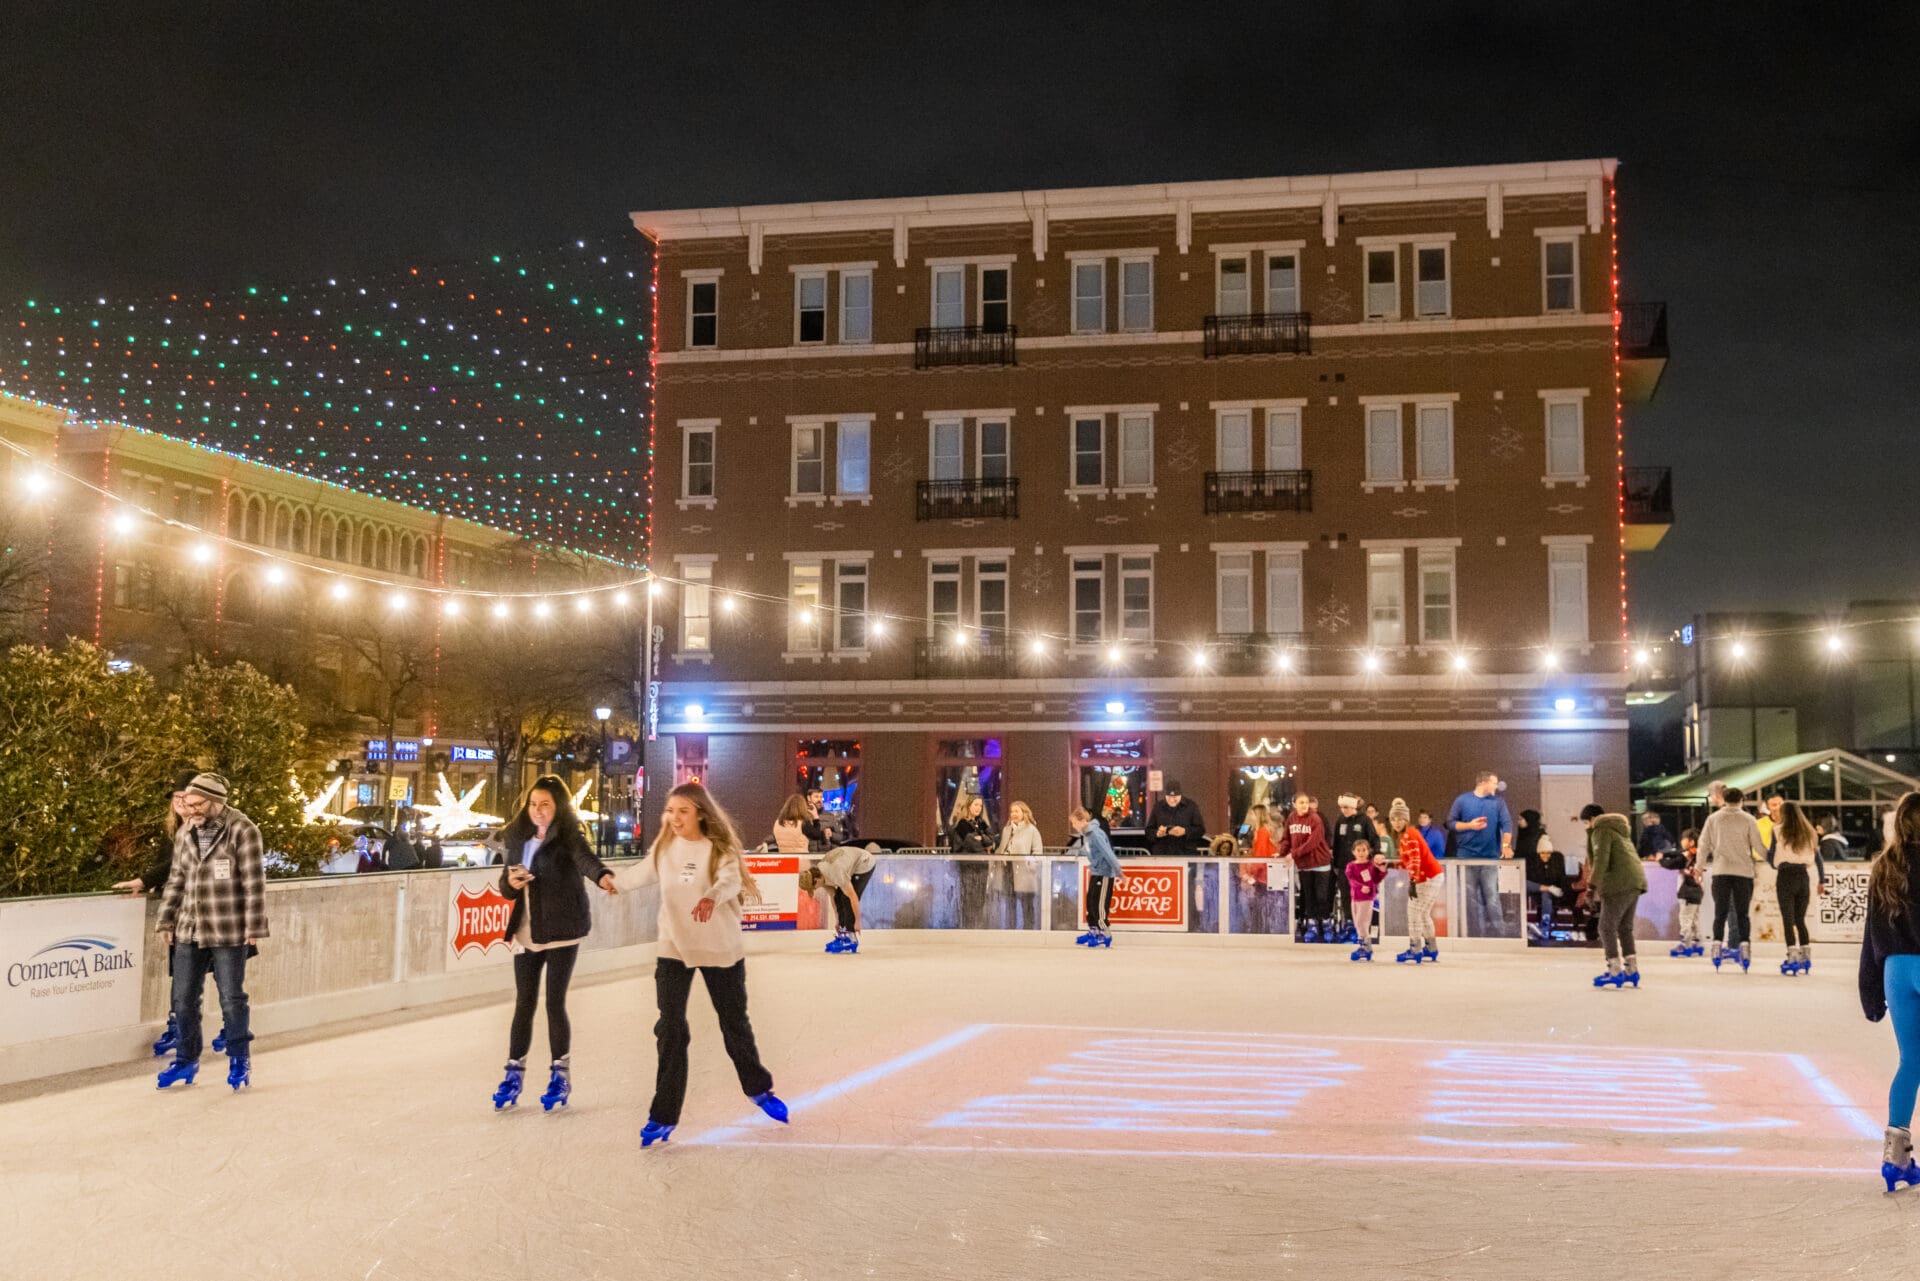 Ice skating at Frisco Square